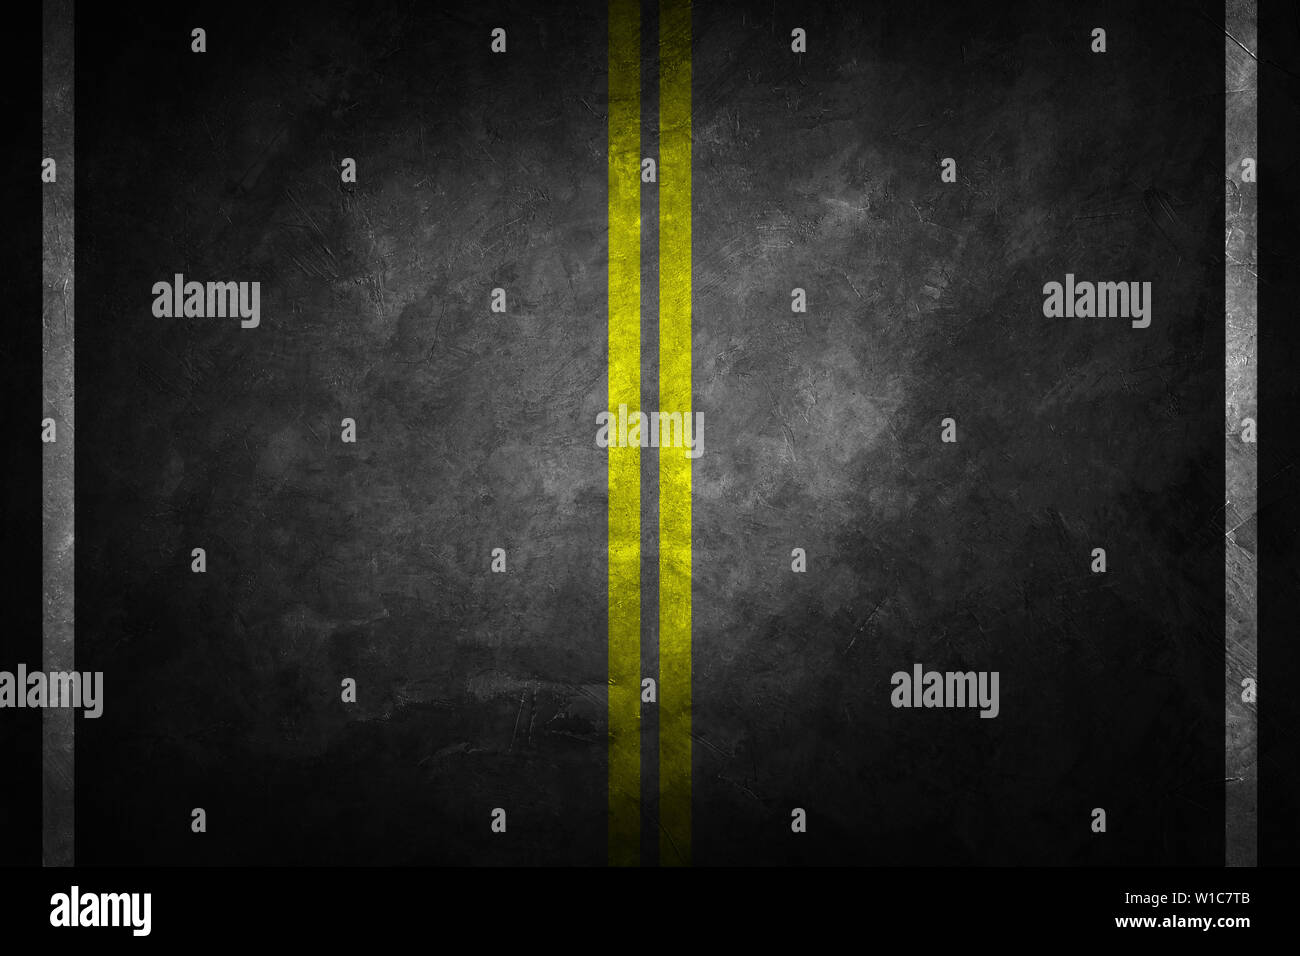 Struttura di granulare di asfalto. Asfalto texture con due linea gialla la segnaletica stradale. Abstract background su strada. Foto Stock